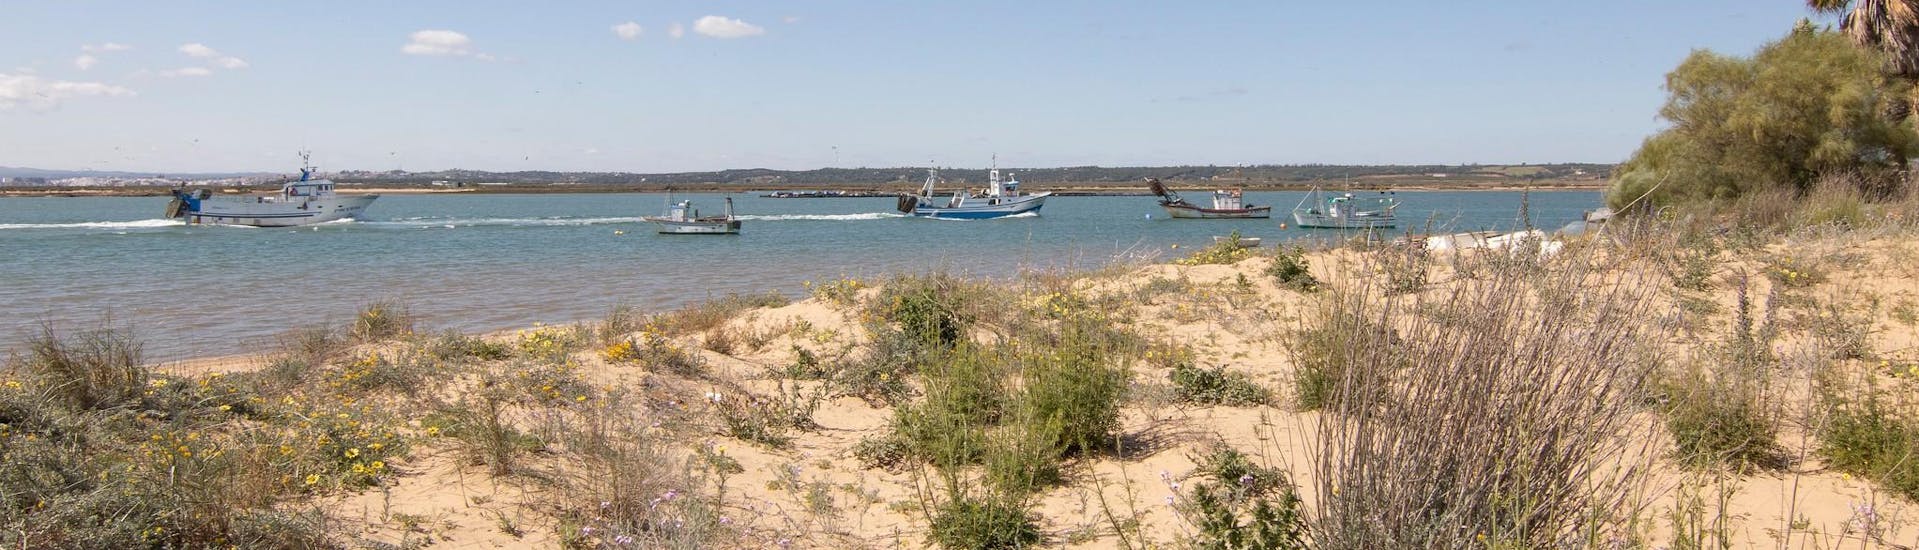 Barcos de pesca frente a la playa de Isla Cristina, un lugar maravilloso que podrá descubrir con un paseo en barco.